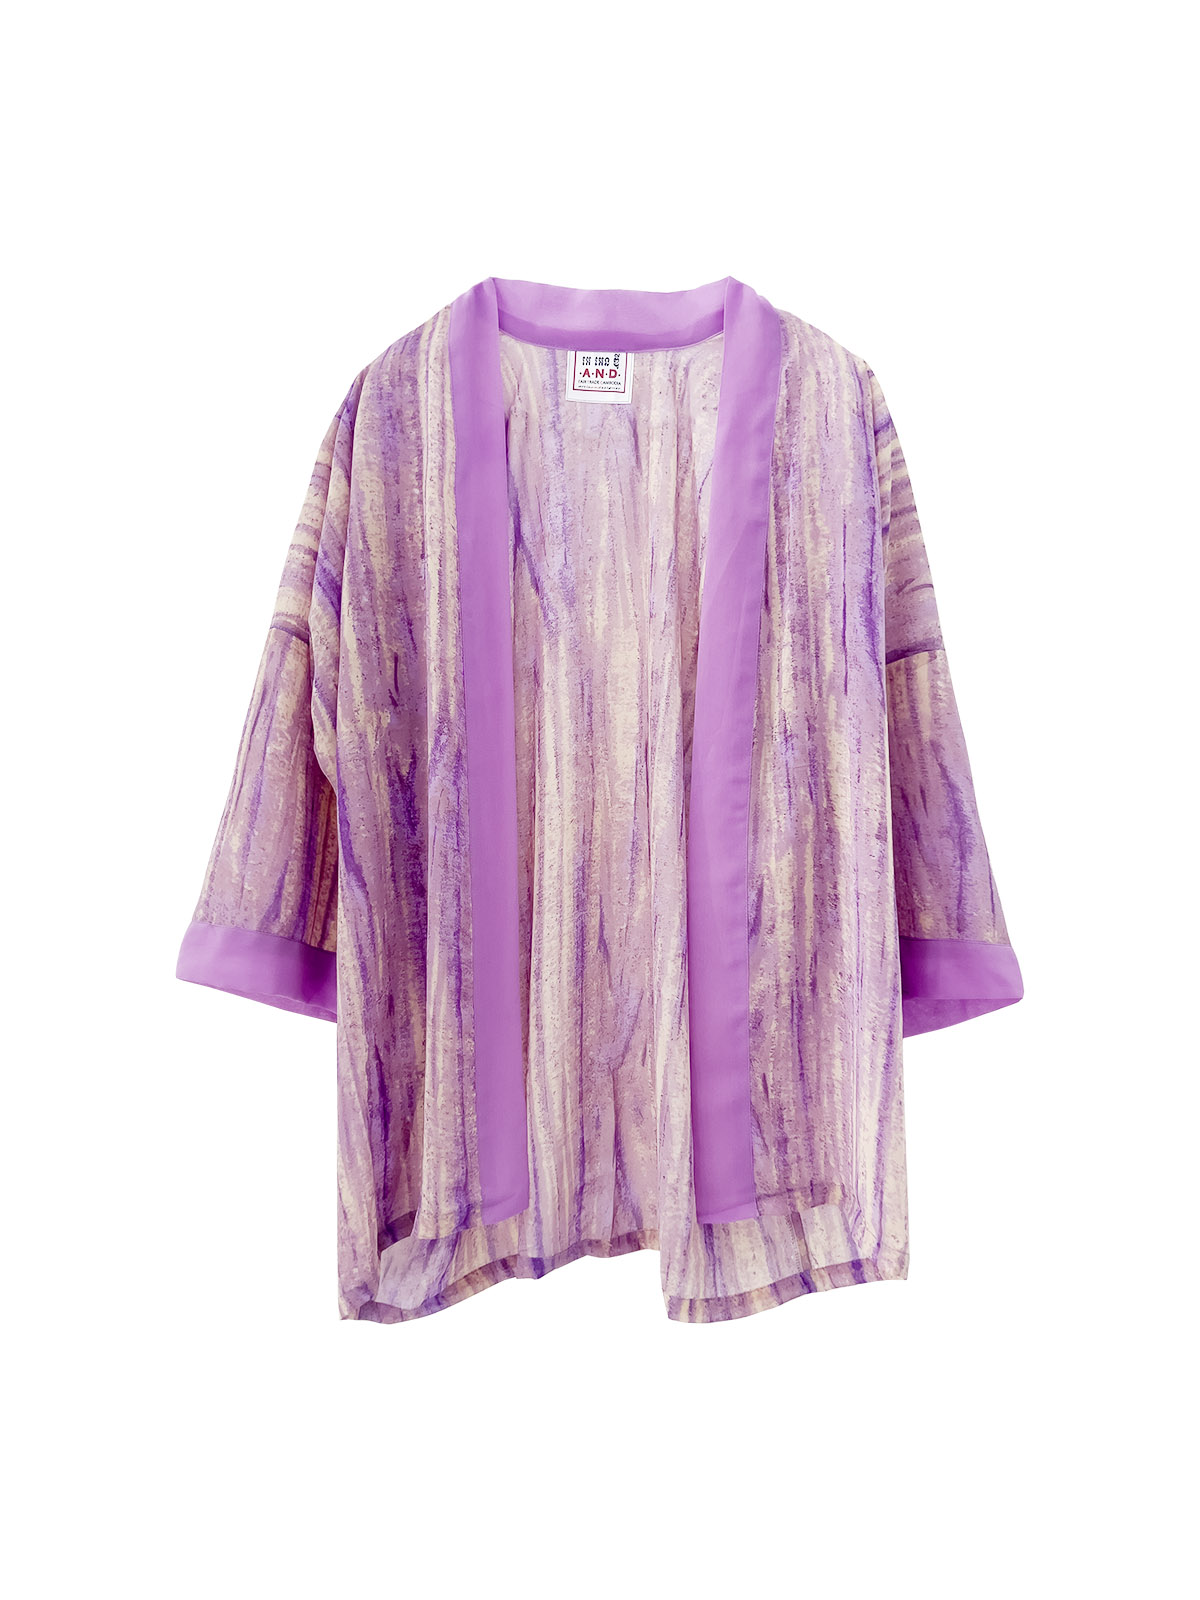 Chiffon Short Robe - Shades of Purple - (h)A.N.D. Fair Fashion - Mitzie Mee Shop